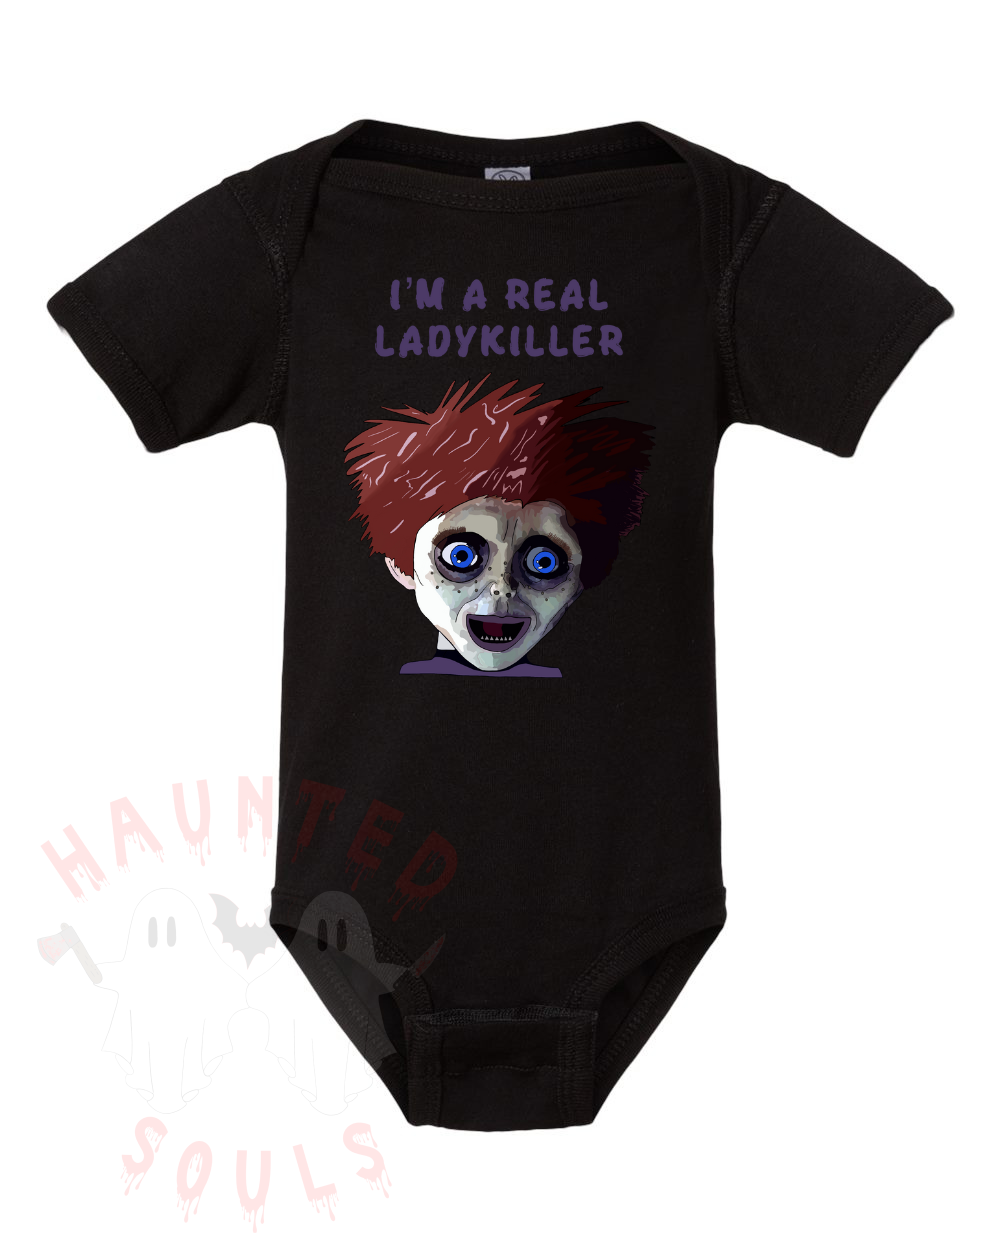 Ladykiller Infant Onesie